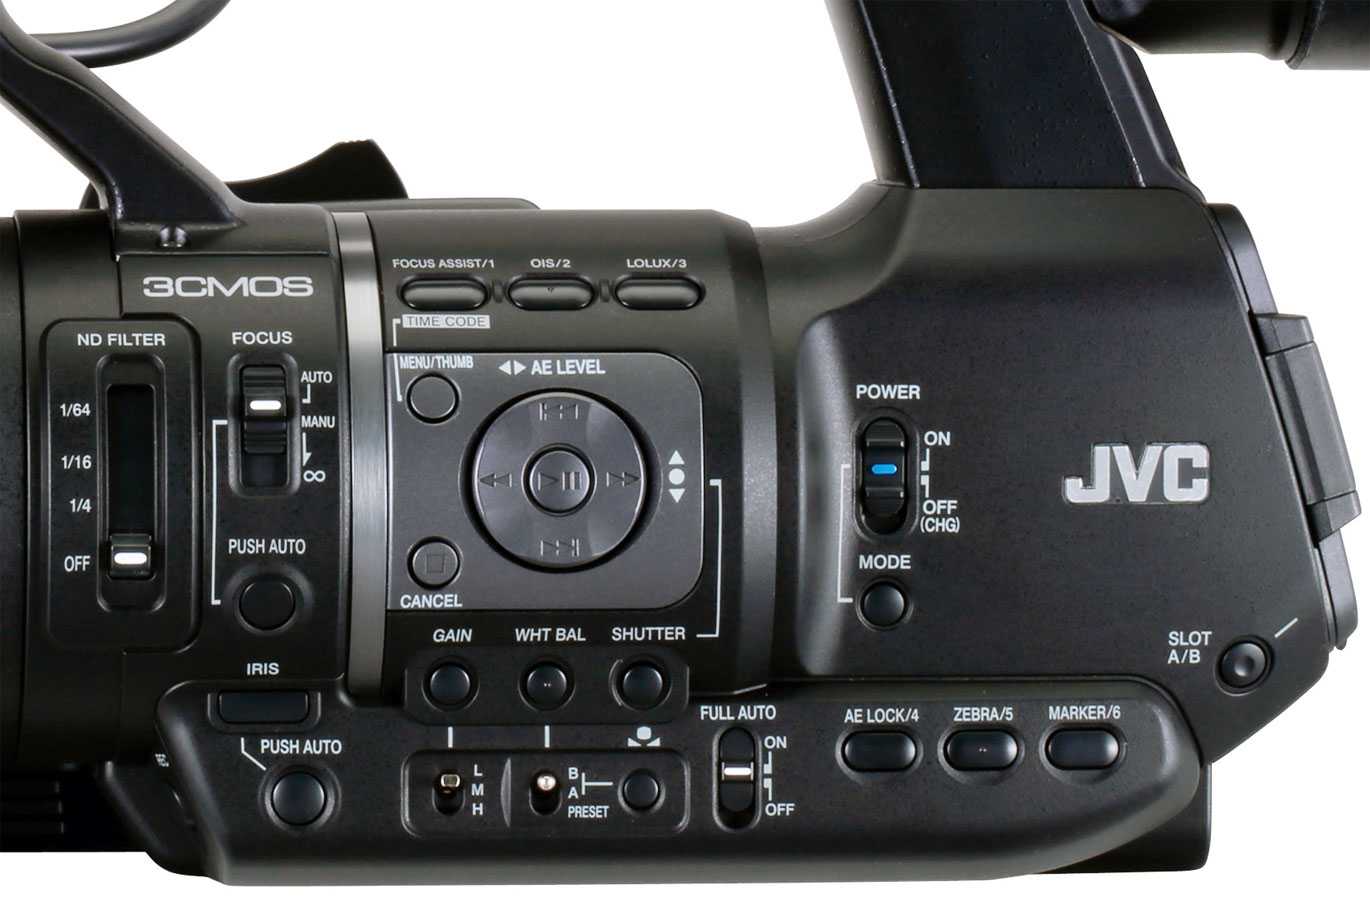 Jvc gy-hm650 купить по акционной цене , отзывы и обзоры.